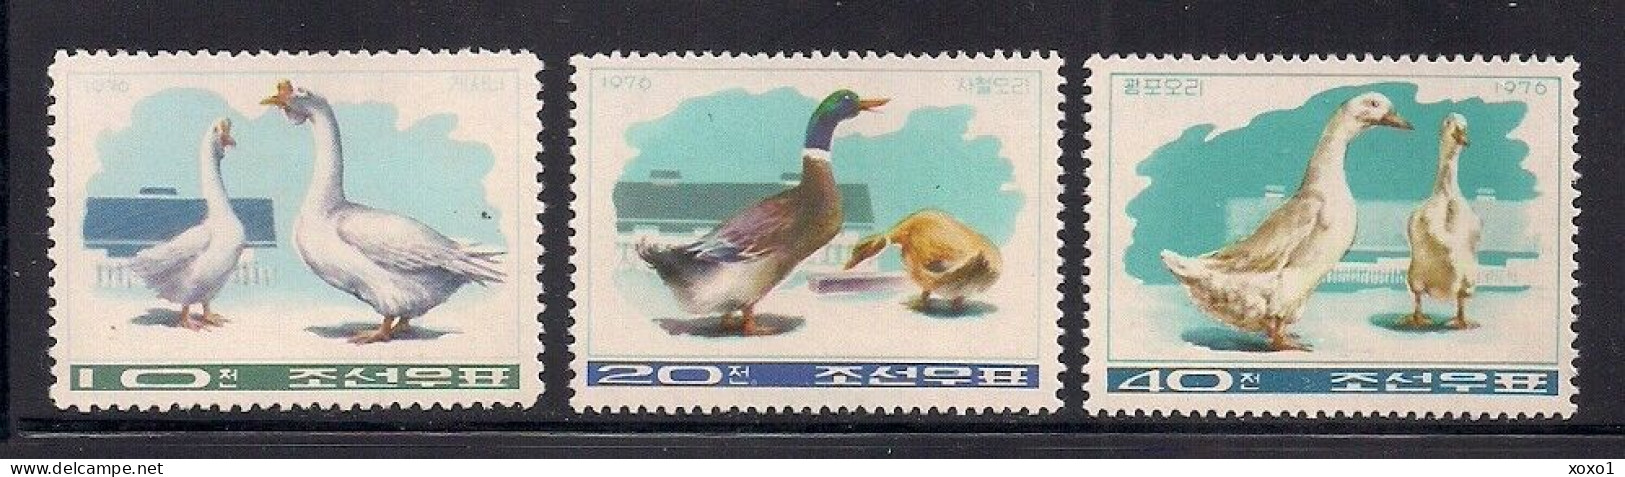 Korea, North 1976 MiNr. 1467 - 1469 Korea-Nord  Vögel Birds Farm  3v  MNH ** 7.00 € - Oche